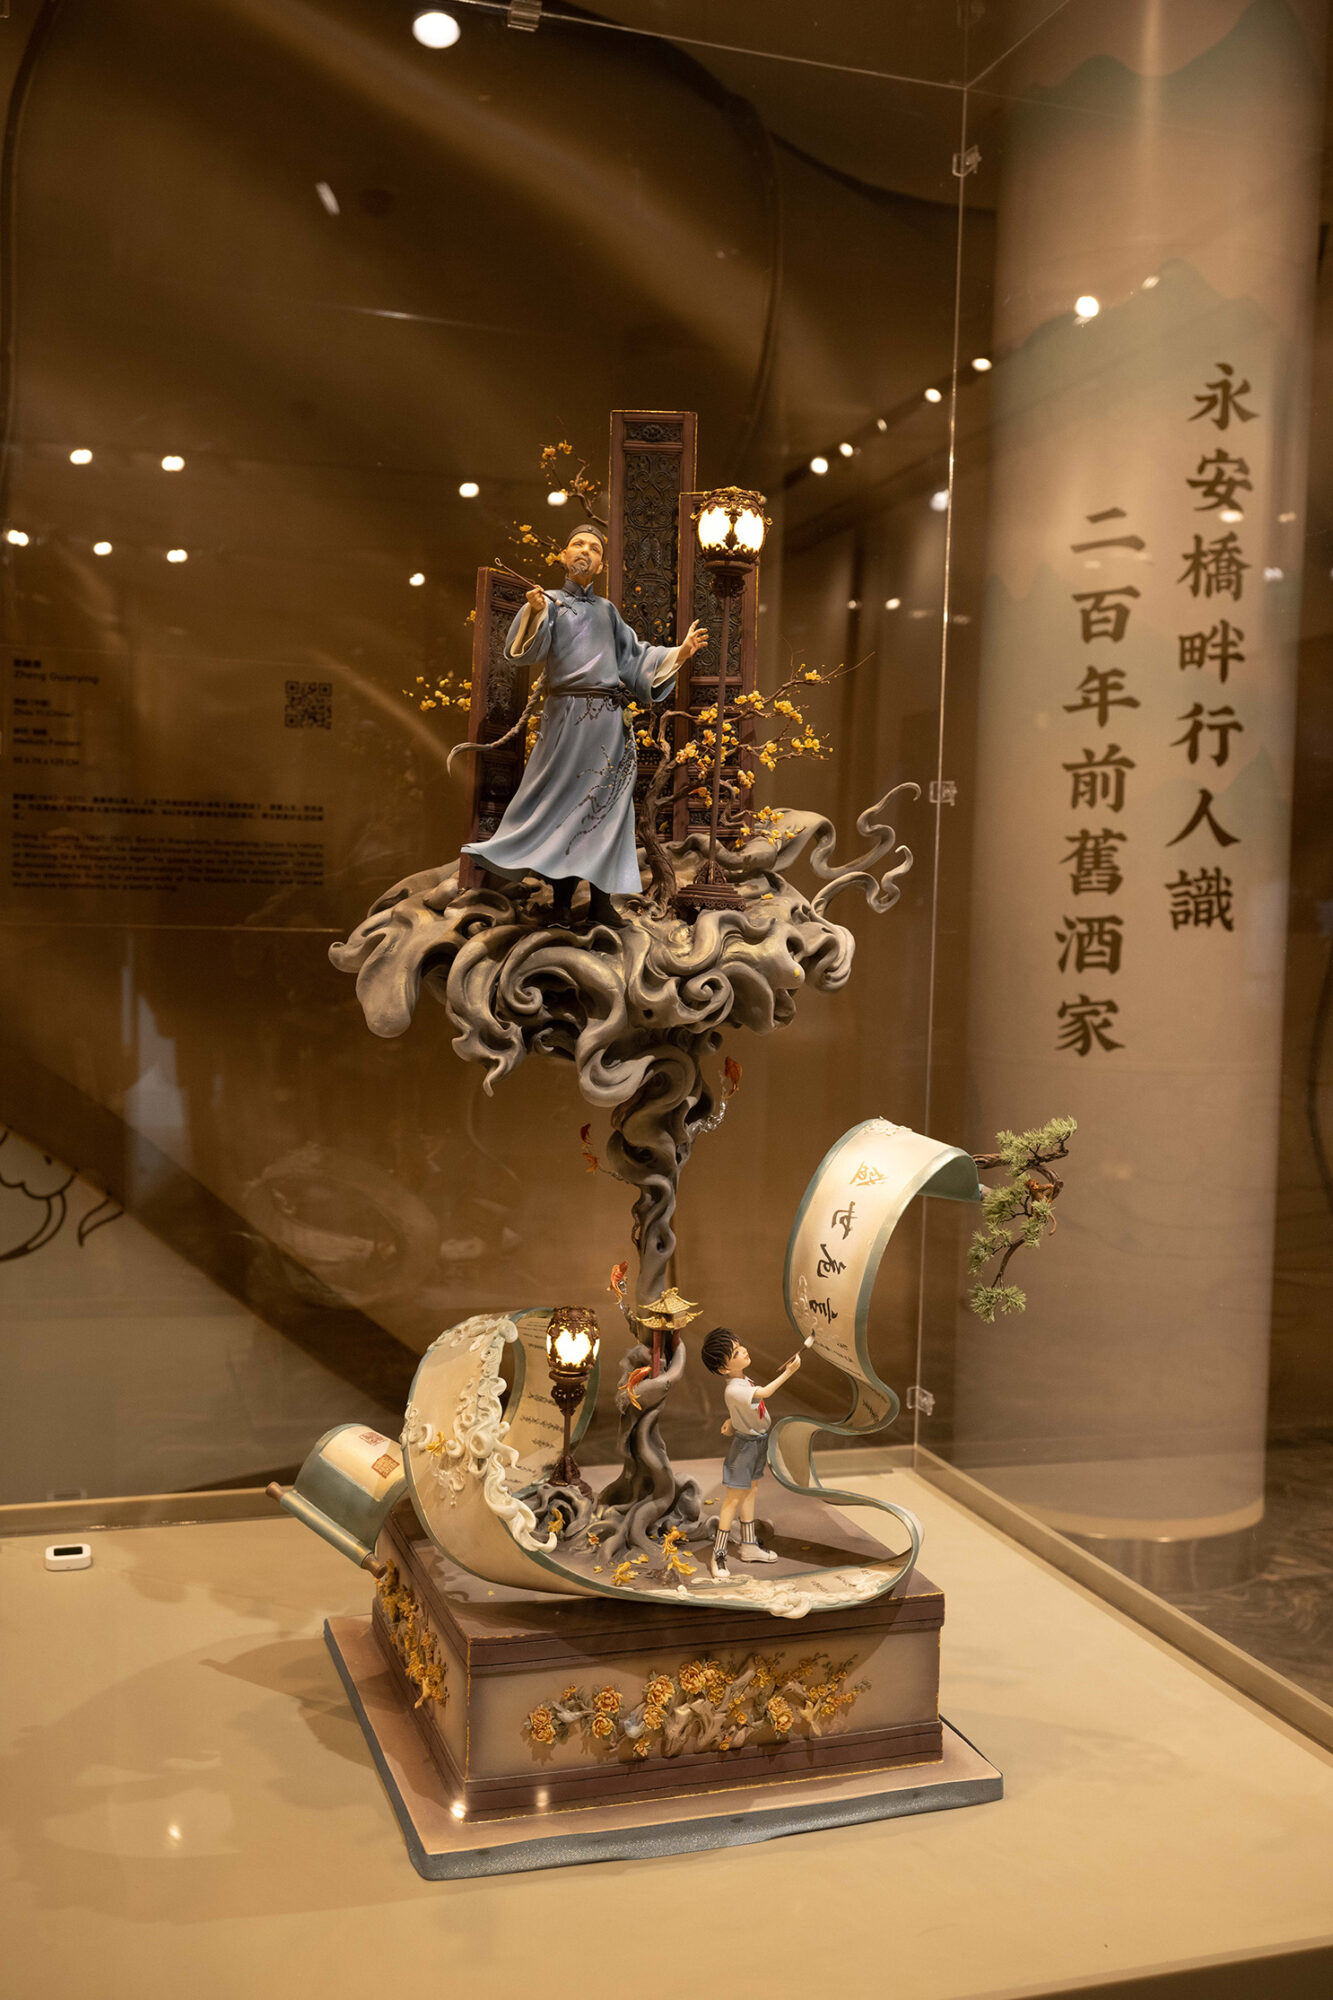 鄭觀應 Zheng Guanying - Fondant Art Exhibition at MGM COTAI 